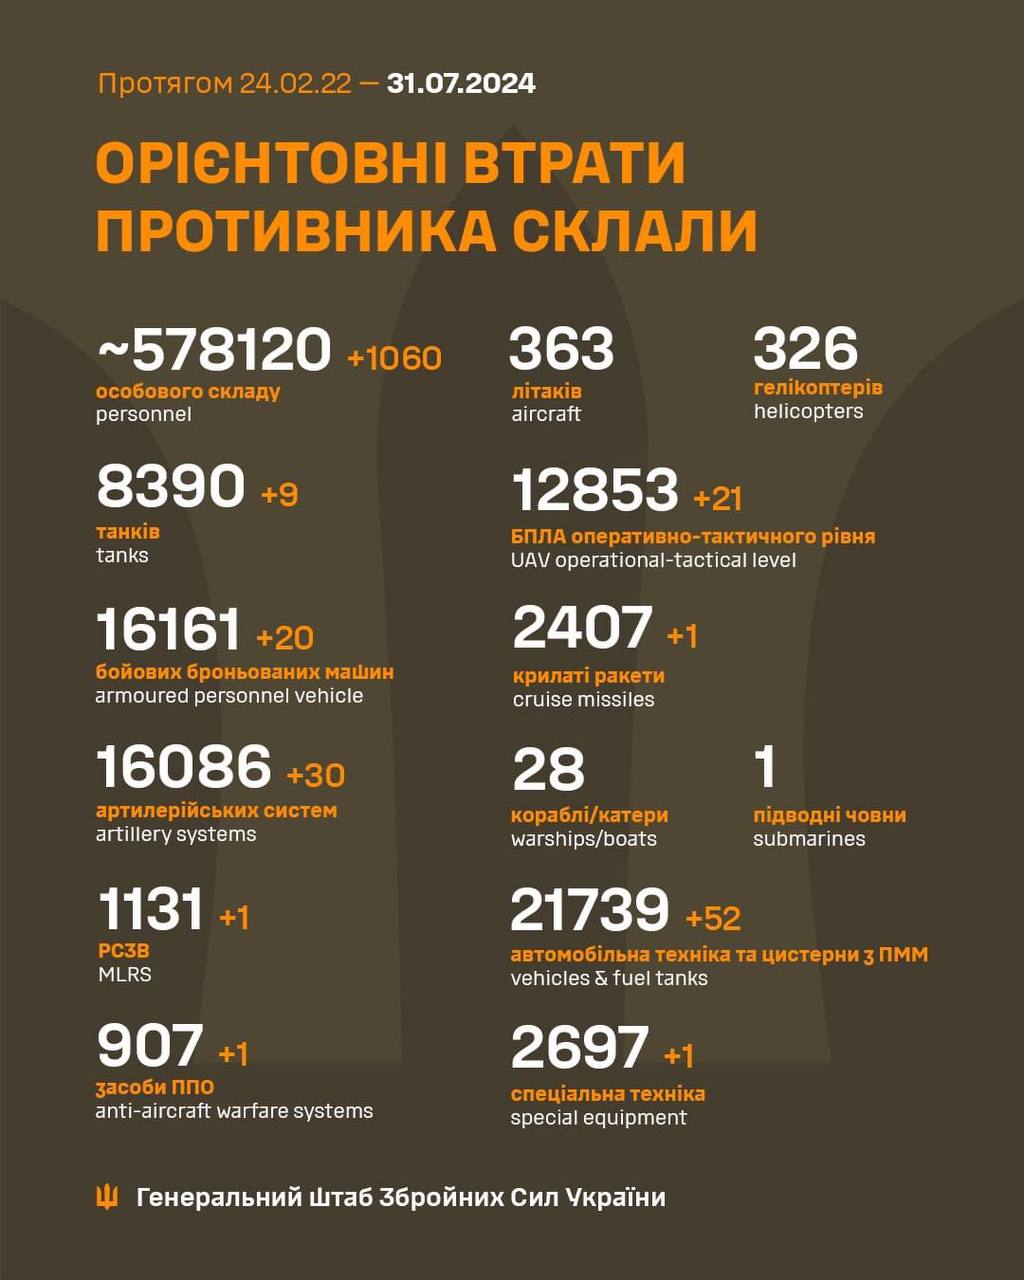 Ще 30 артсистем, 20 ББМ і понад тисячу окупантів: втрати РФ за добу